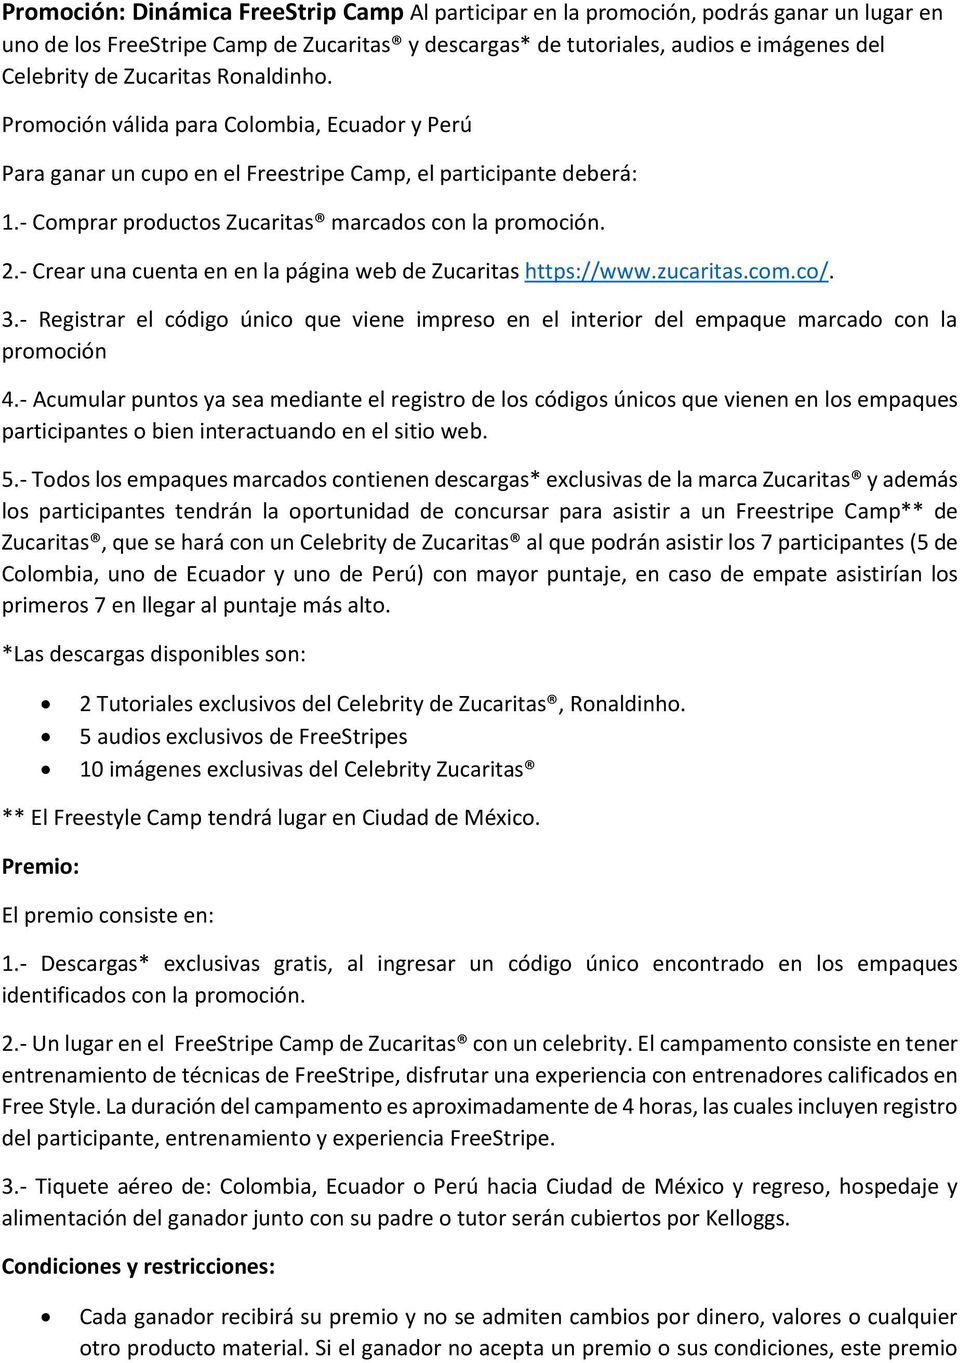 - Crear una cuenta en en la página web de Zucaritas https://www.zucaritas.cm.c/. 3.- Registrar el códig únic que viene impres en el interir del empaque marcad cn la prmción 4.